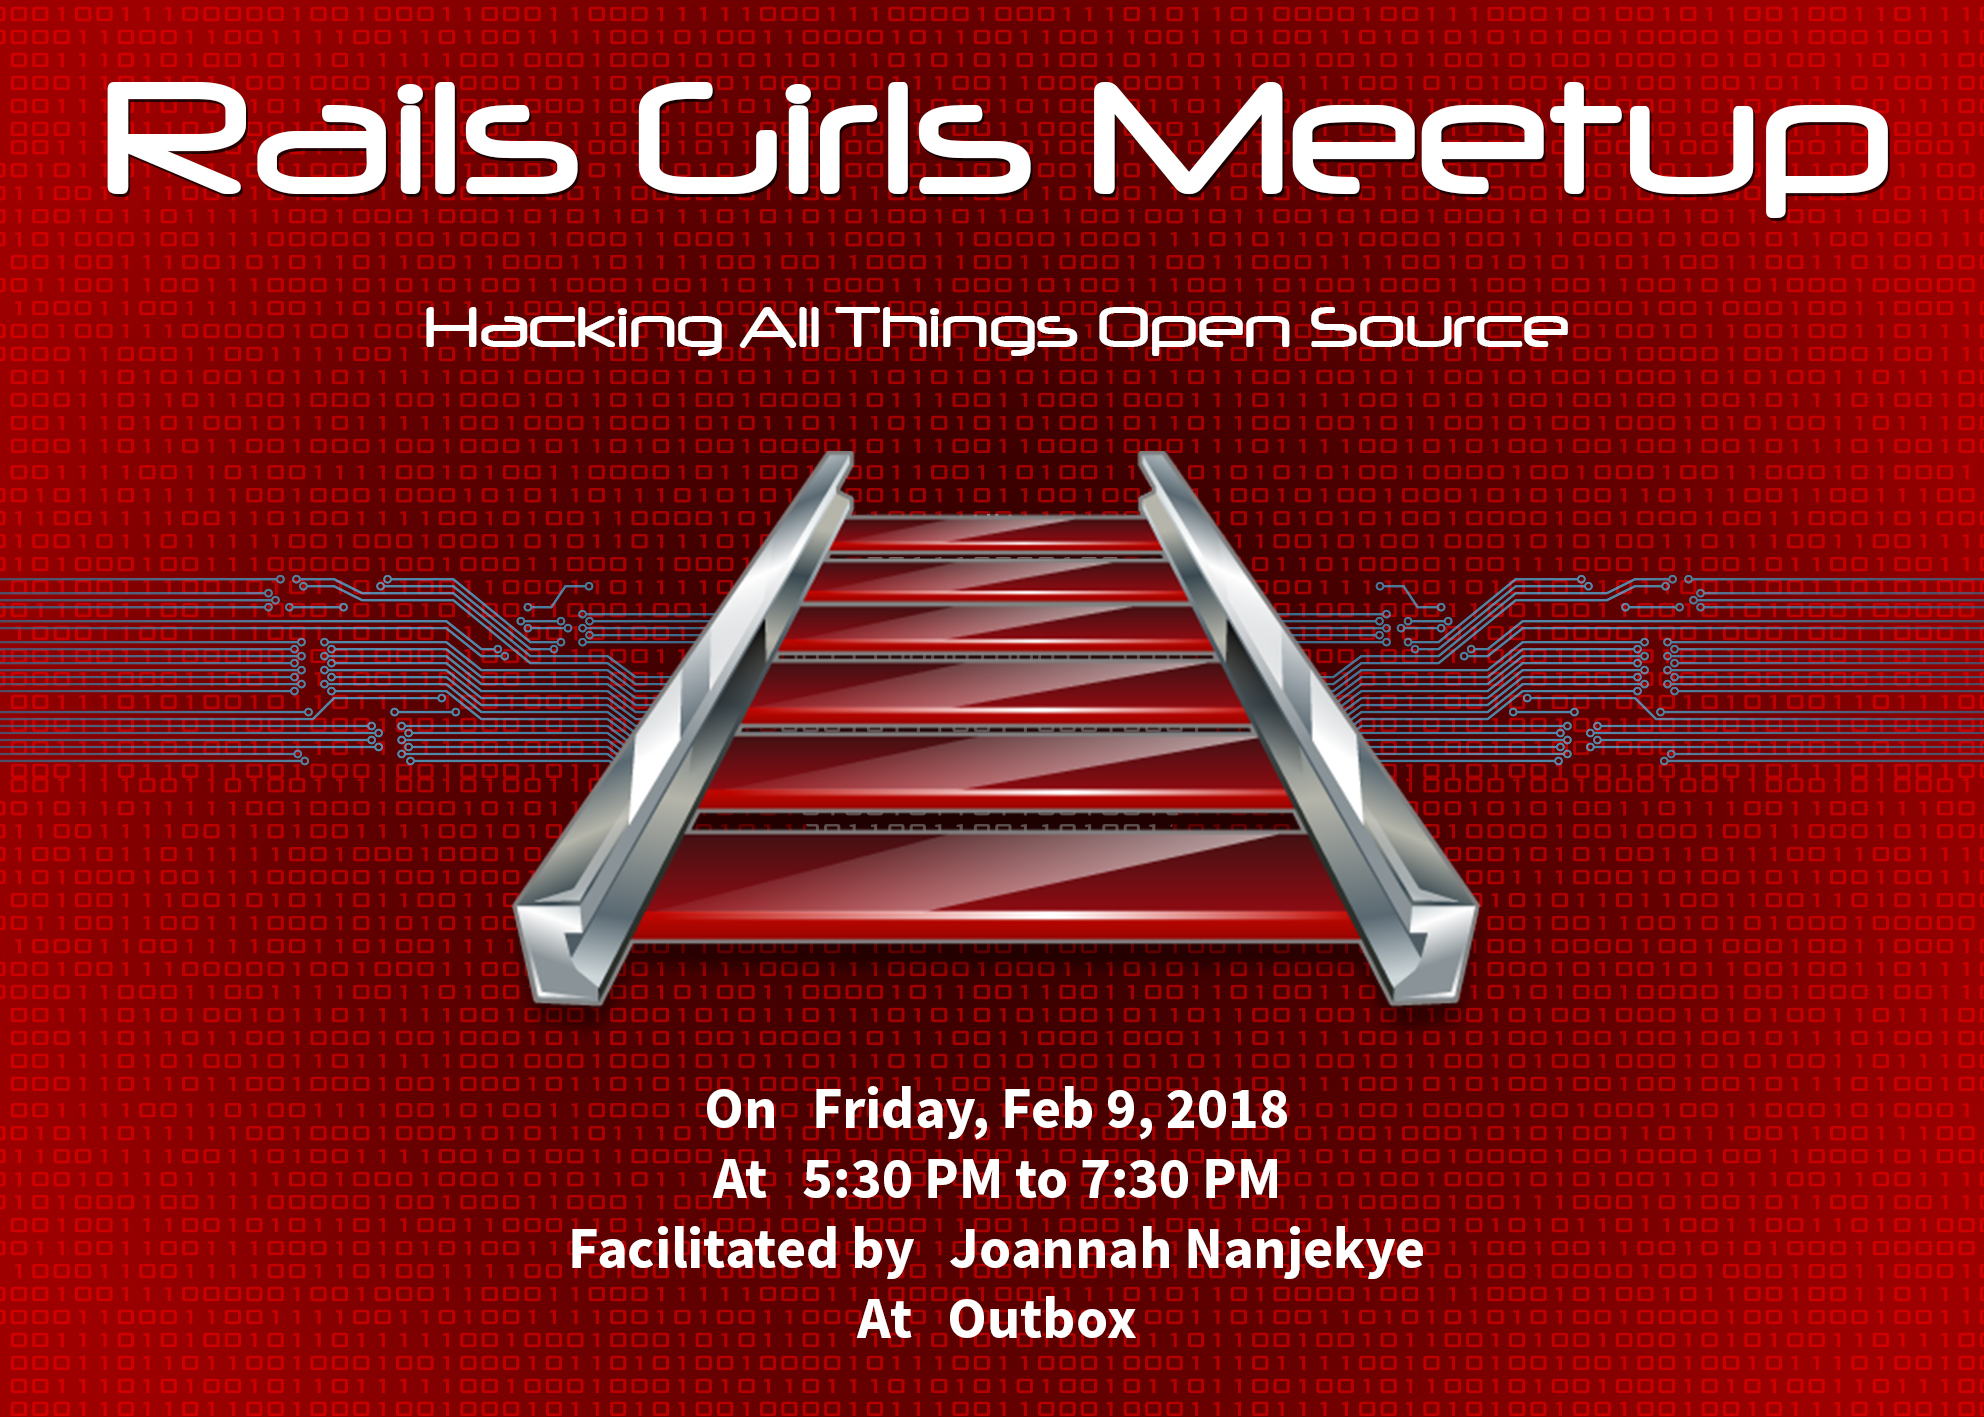 Rails Girls Meetup